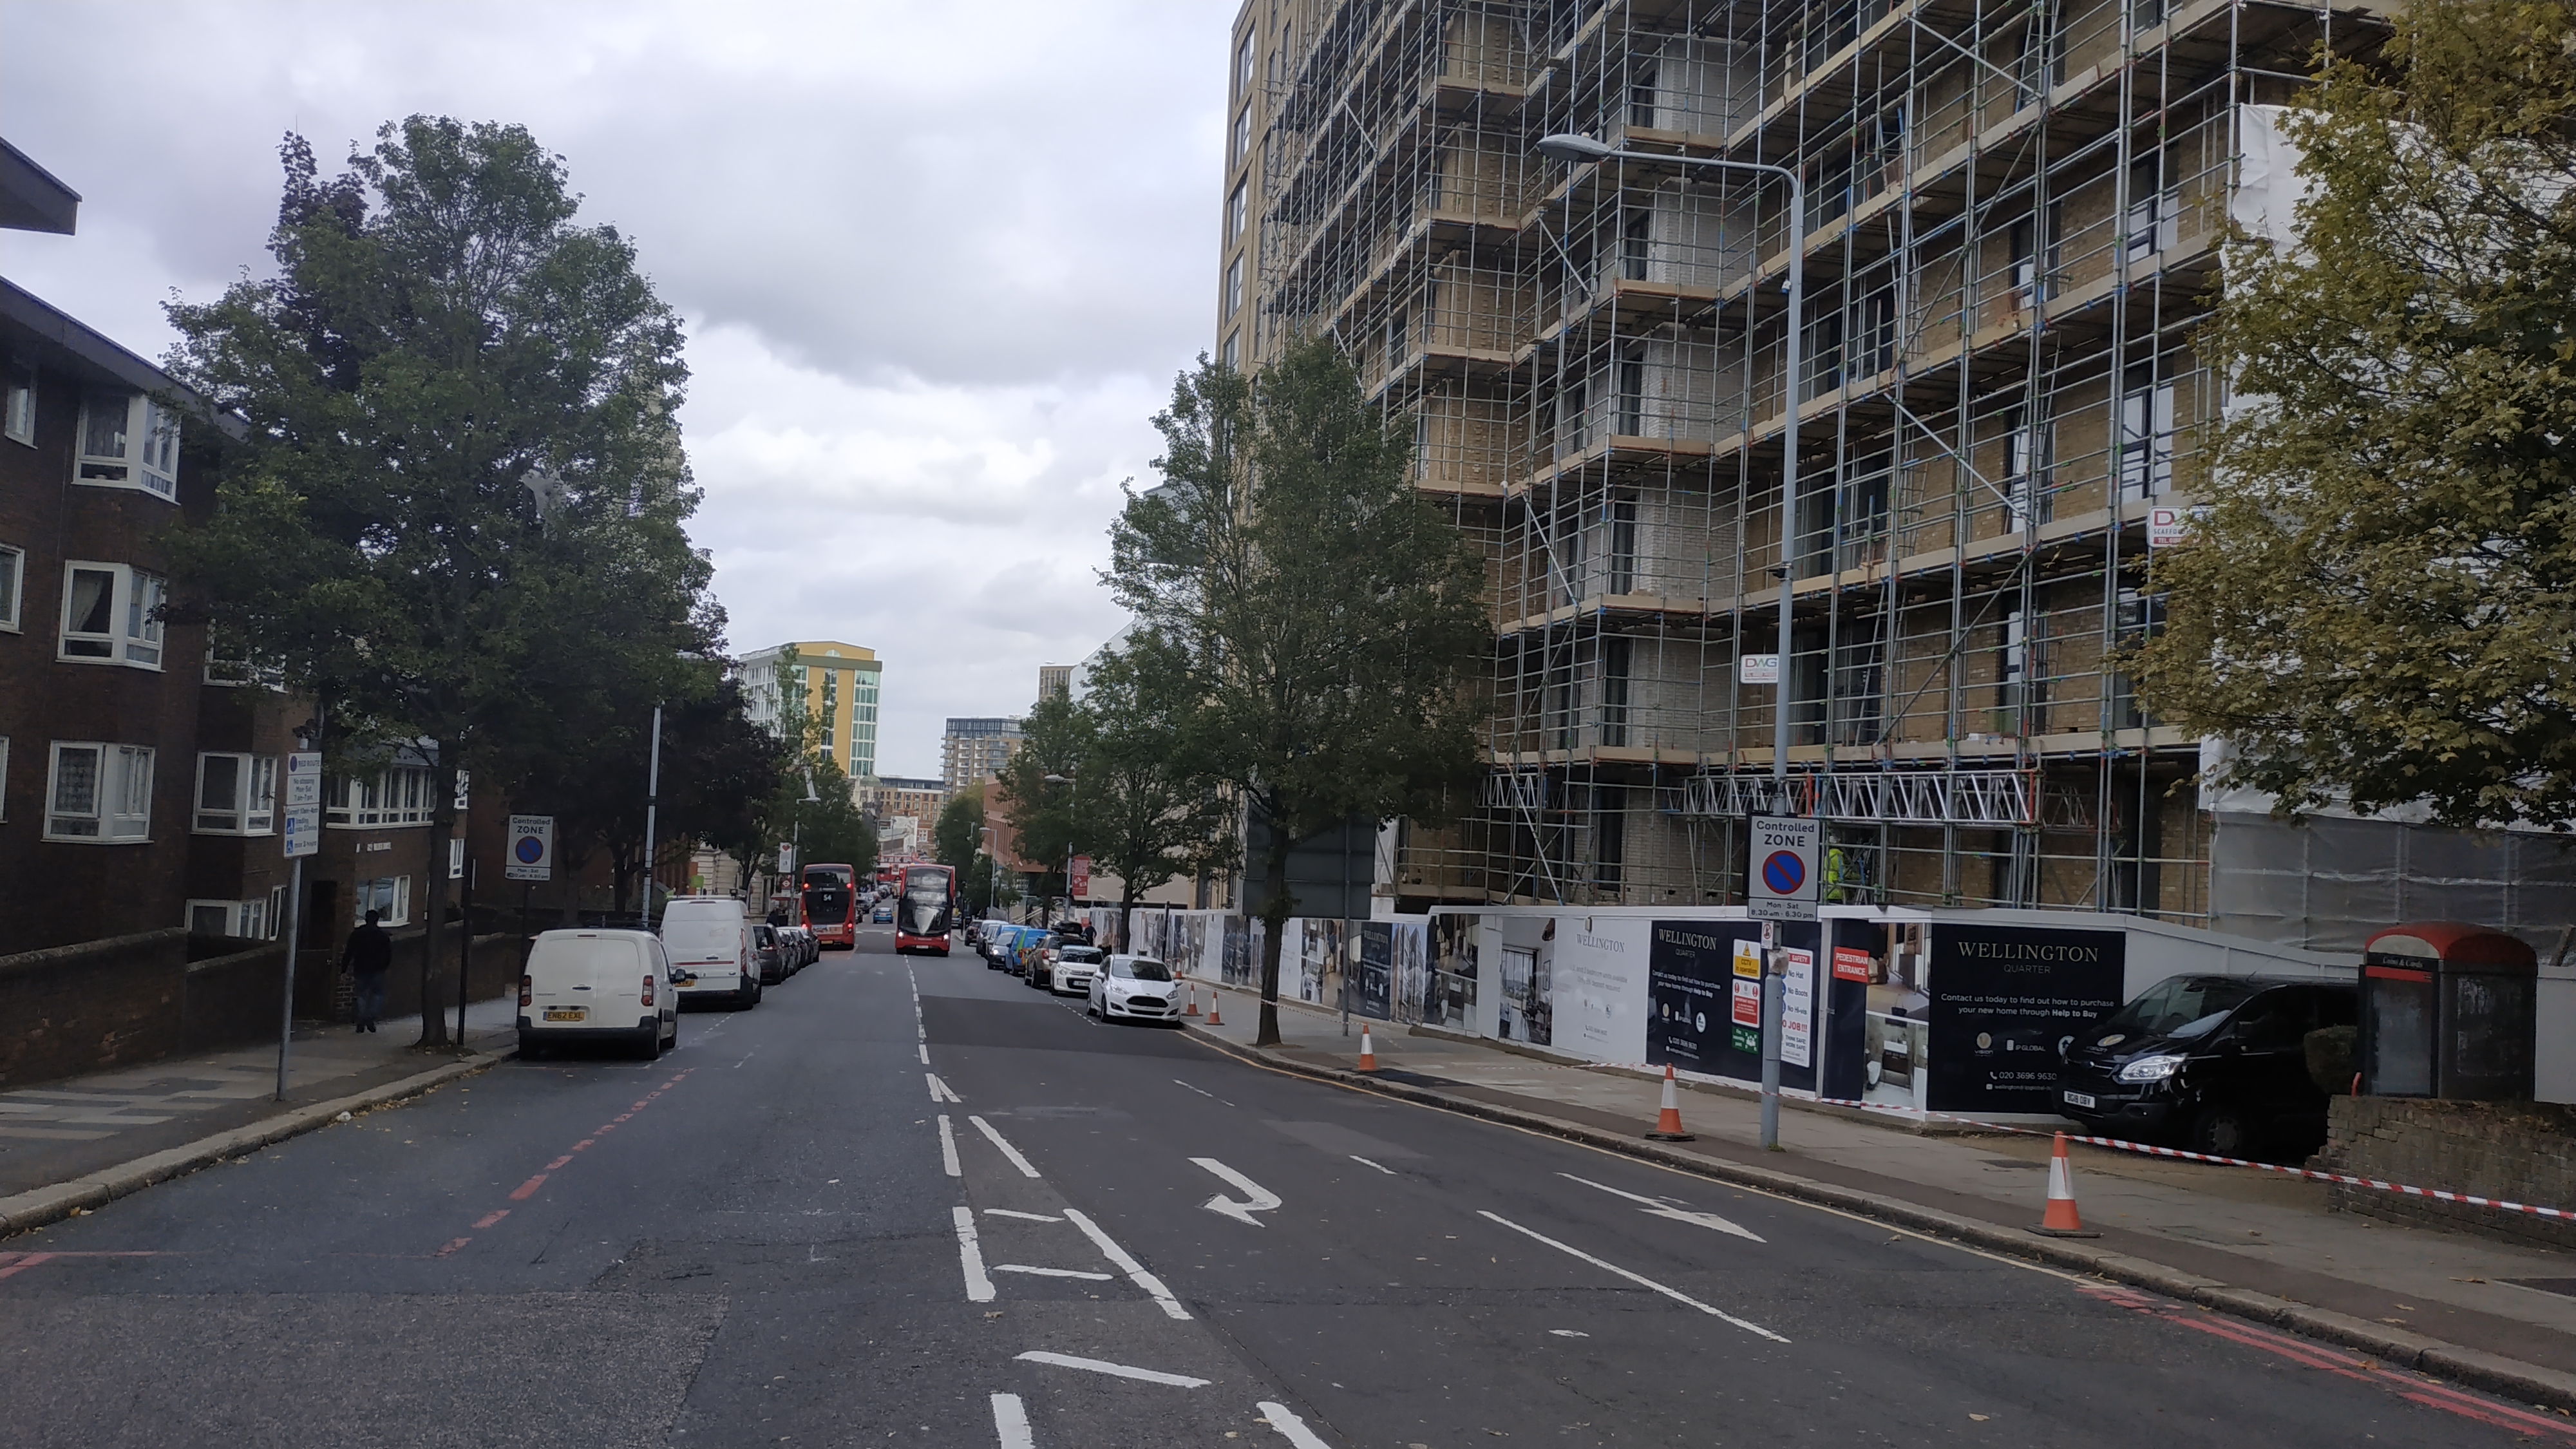 New blocks beside Woolwich Centre seen as "Wellington